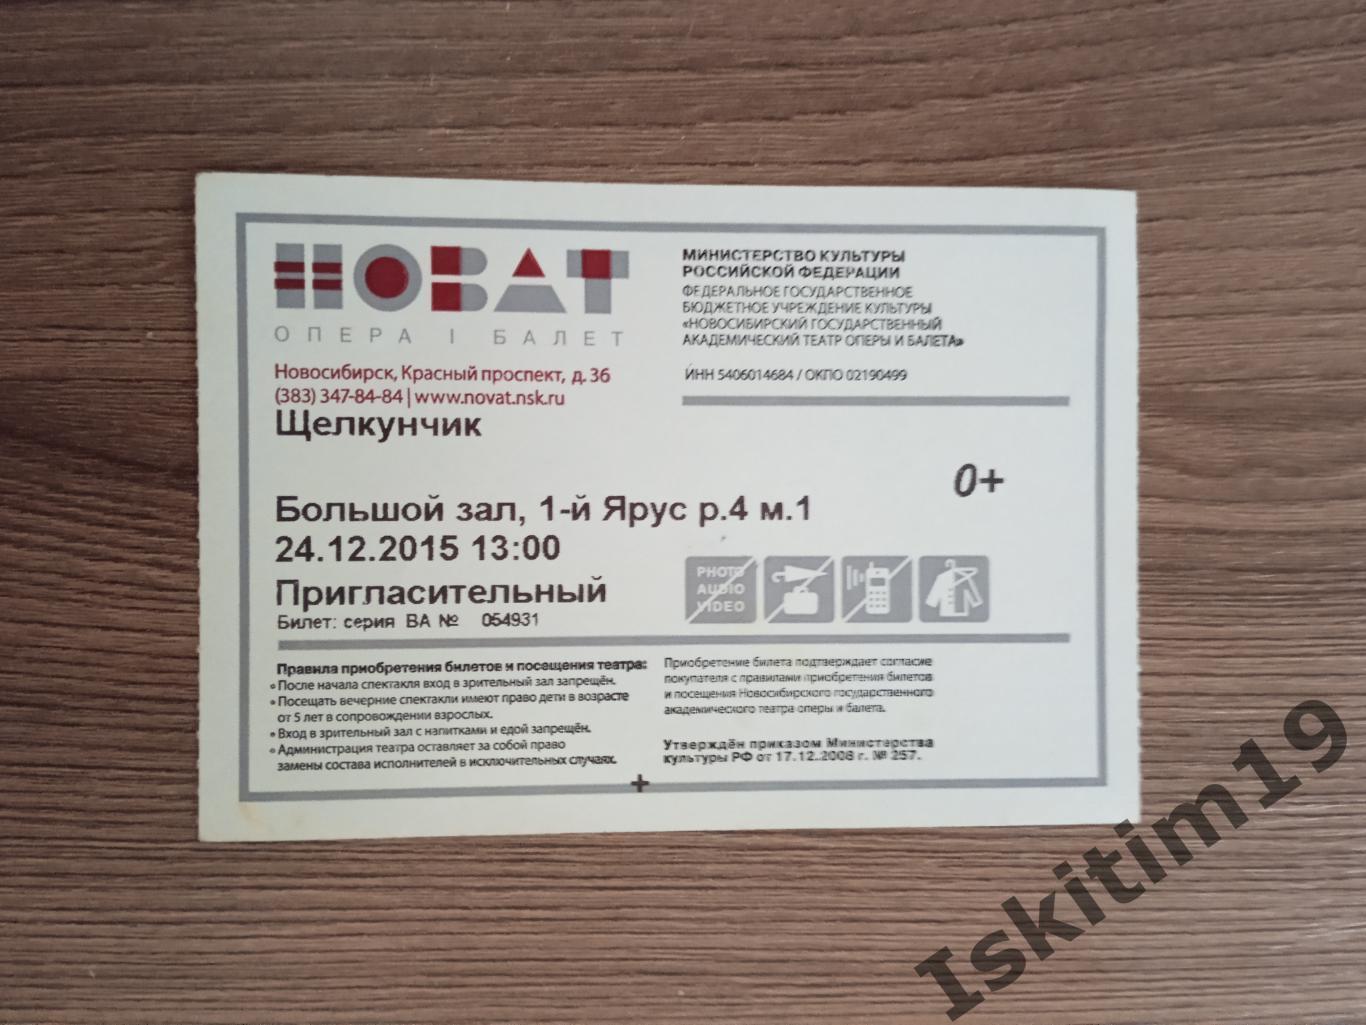 Пригласительный билет Щелкунчик 24.12.2015 Новосибирск